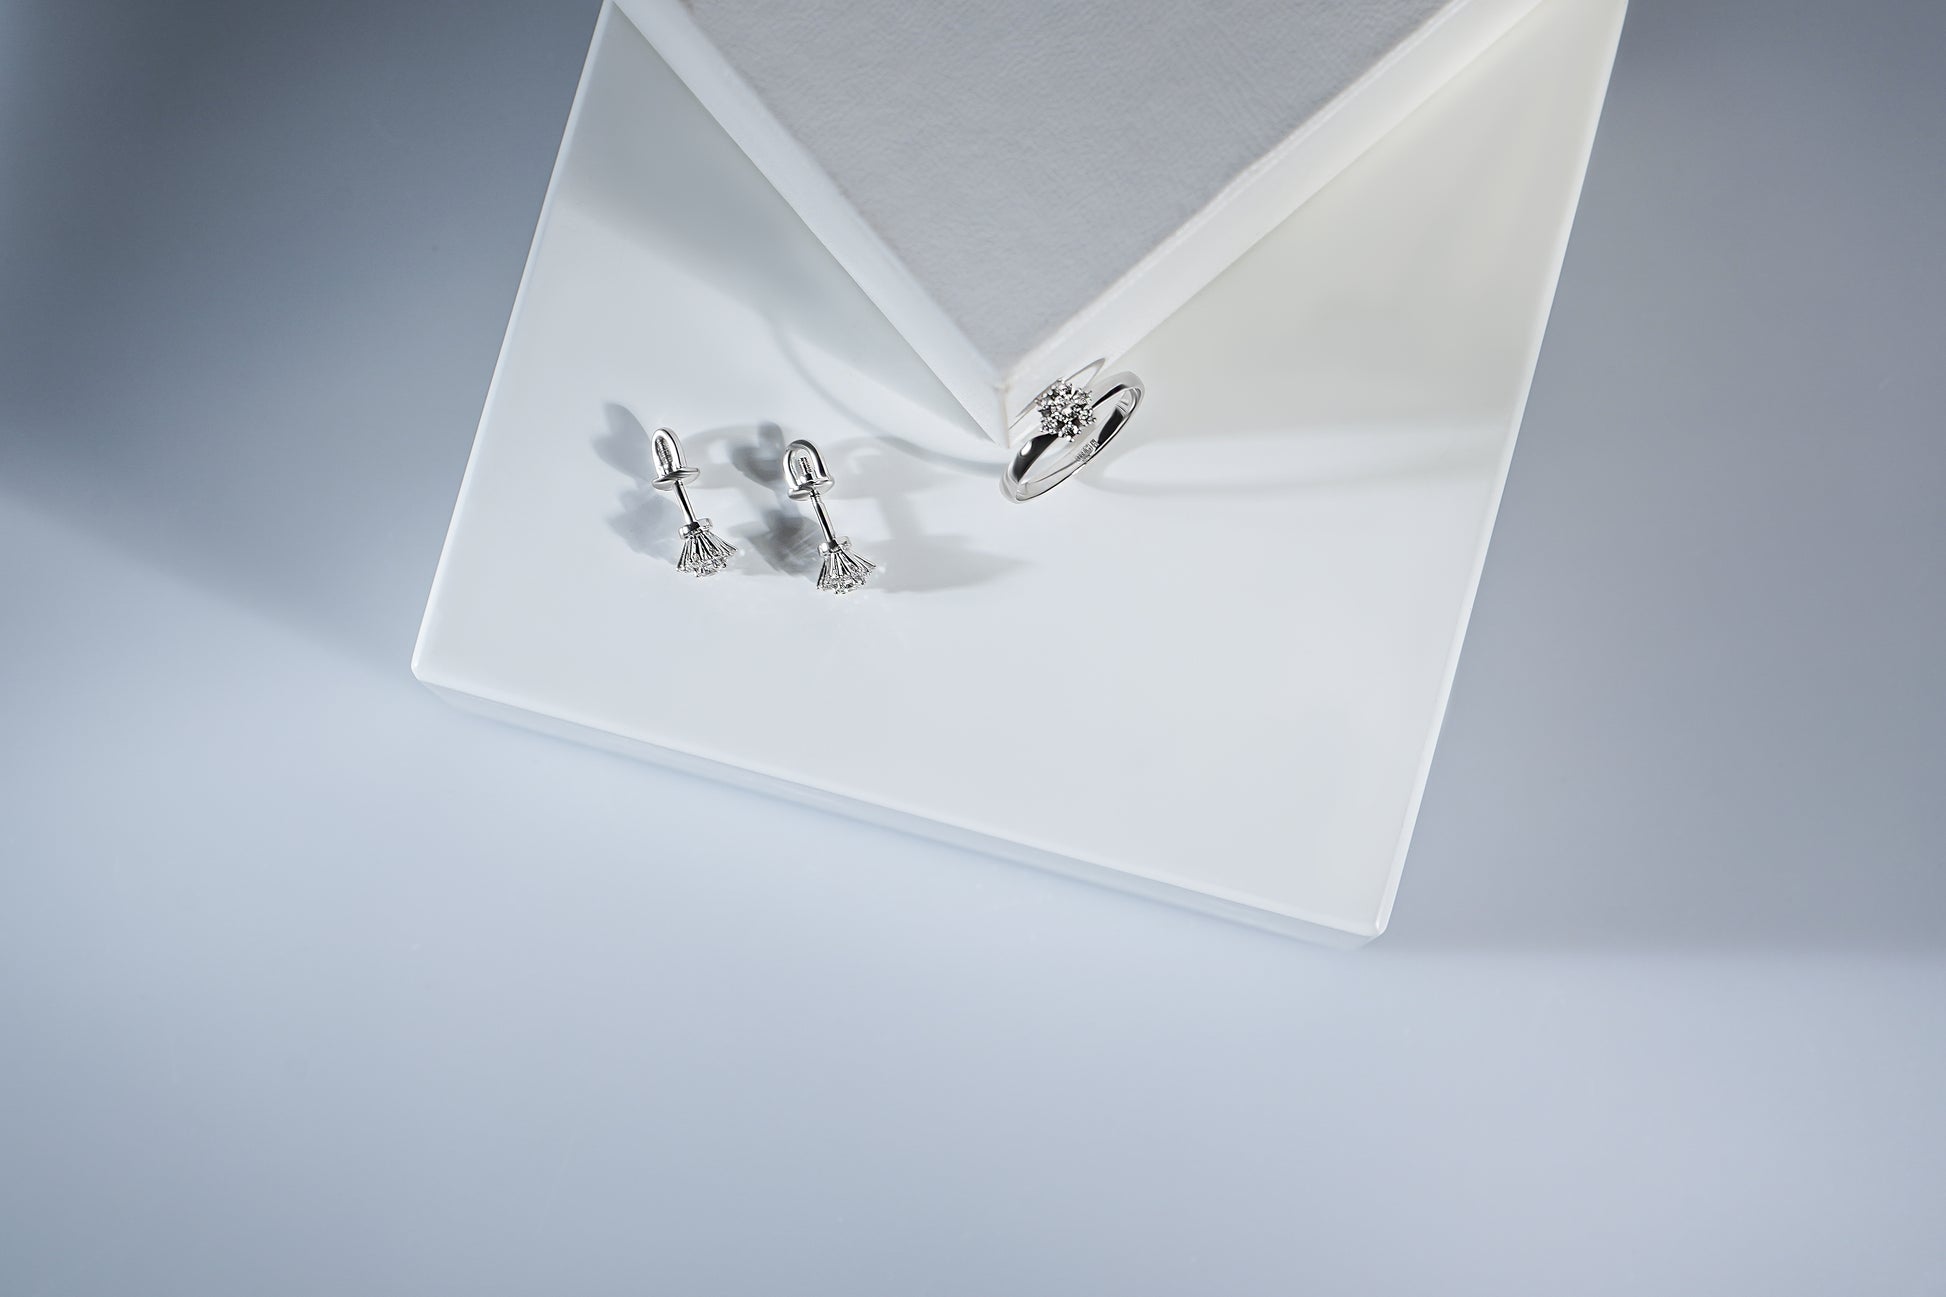 Сережки пусети та каблучка з діамантами у формі квітки. Зображені на білій підставці